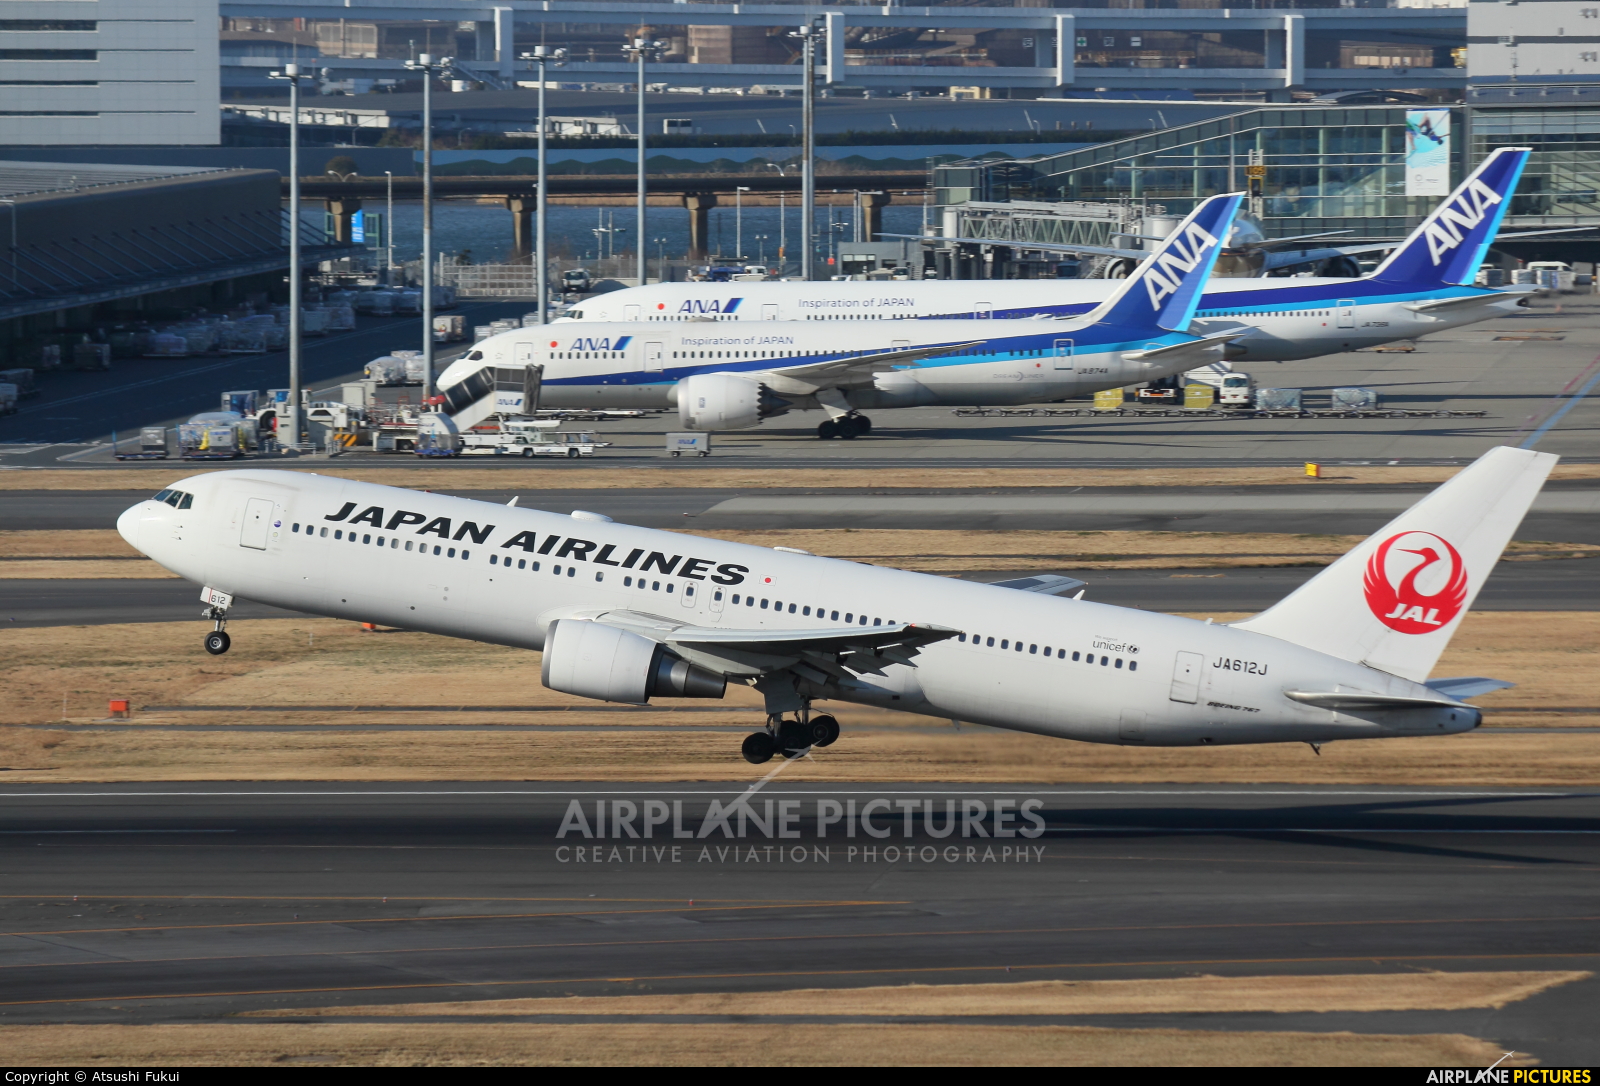 JAL - Japan Airlines JA612J aircraft at Tokyo - Haneda Intl